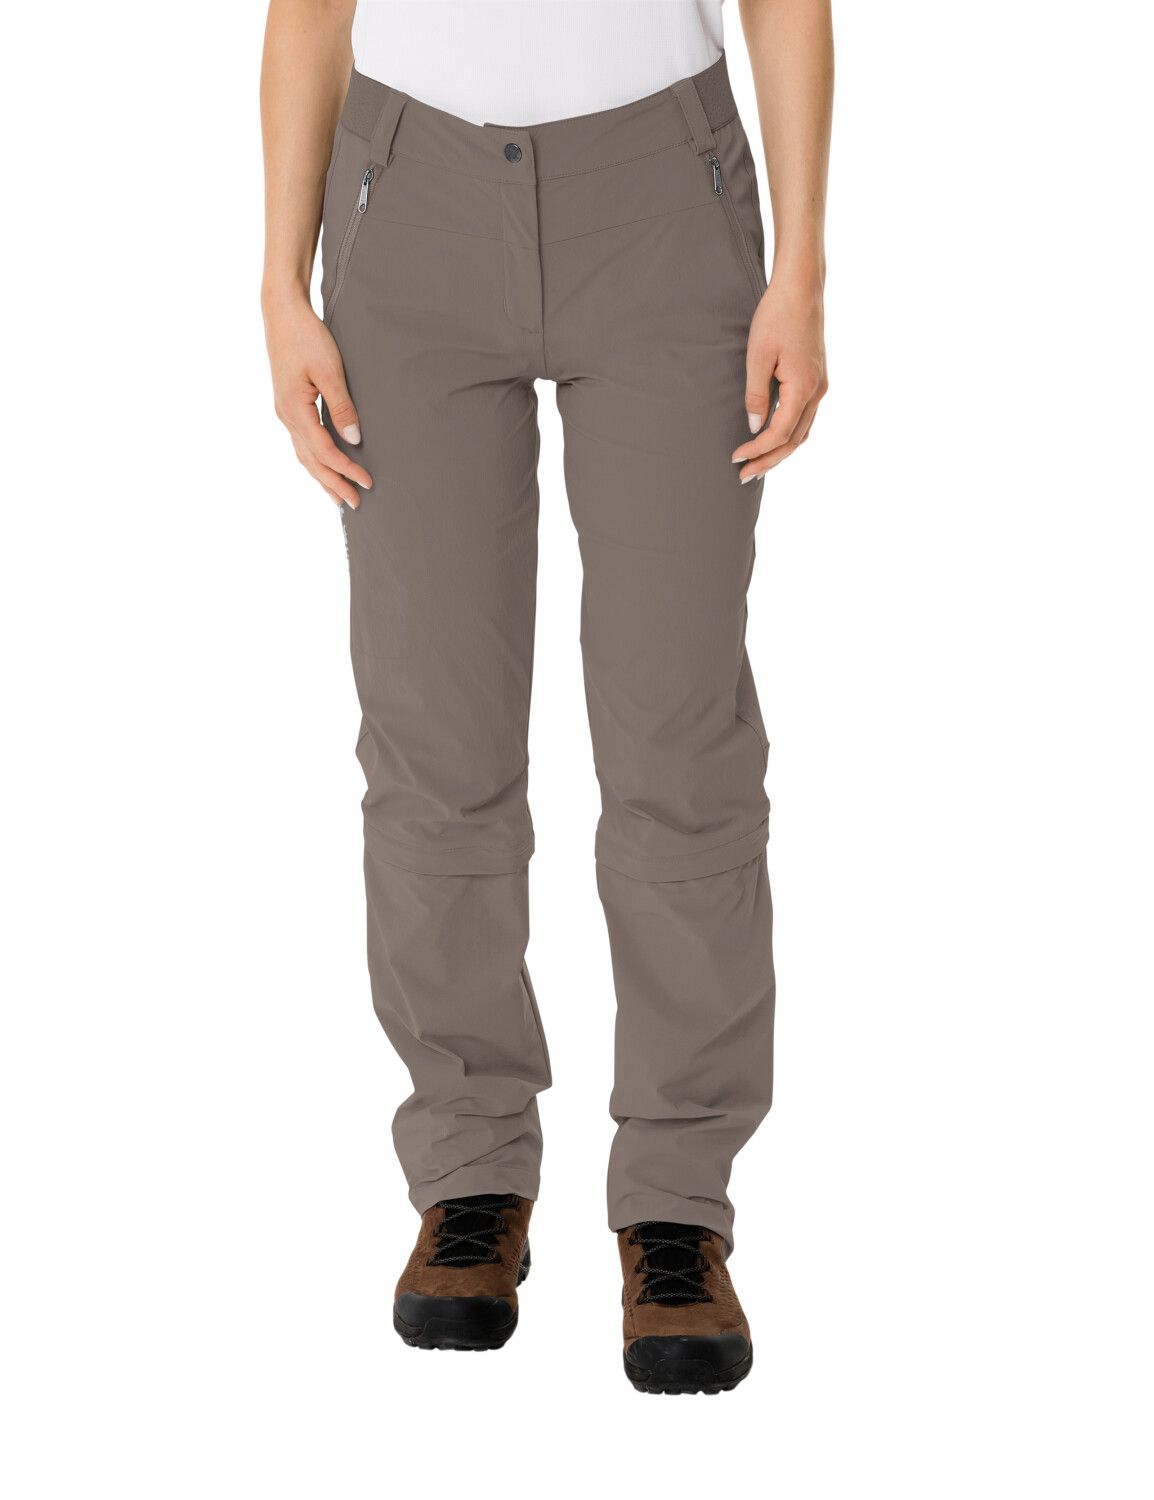 VAUDE Women's Farley Stretch Capri T-Zip Pants III (Bild 31)